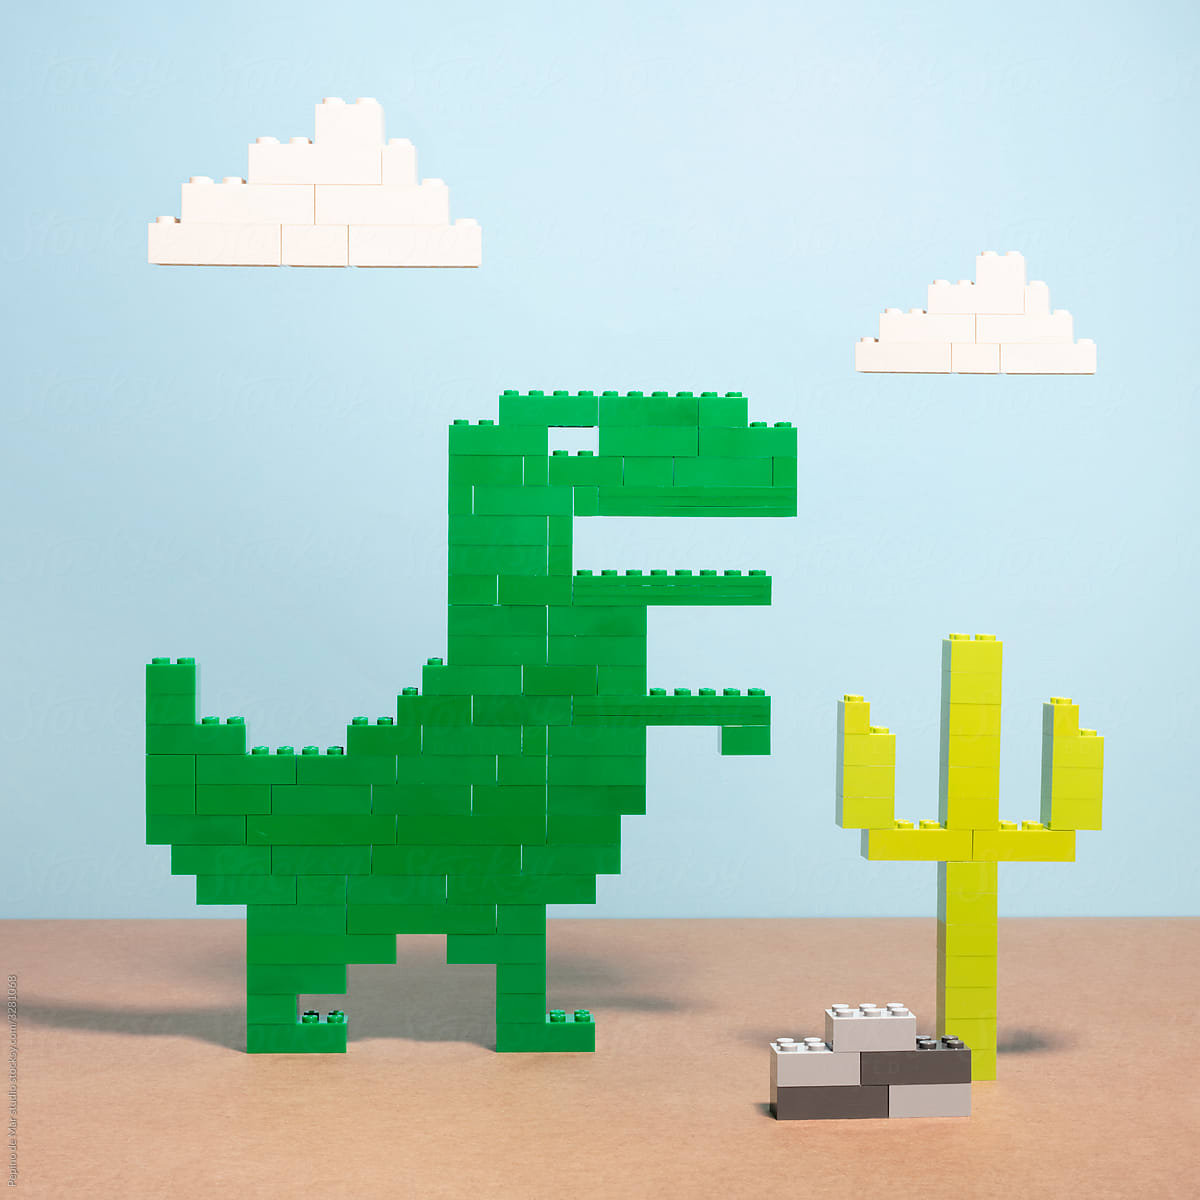 Dinosaur and Cactus Made of Toy Bricks